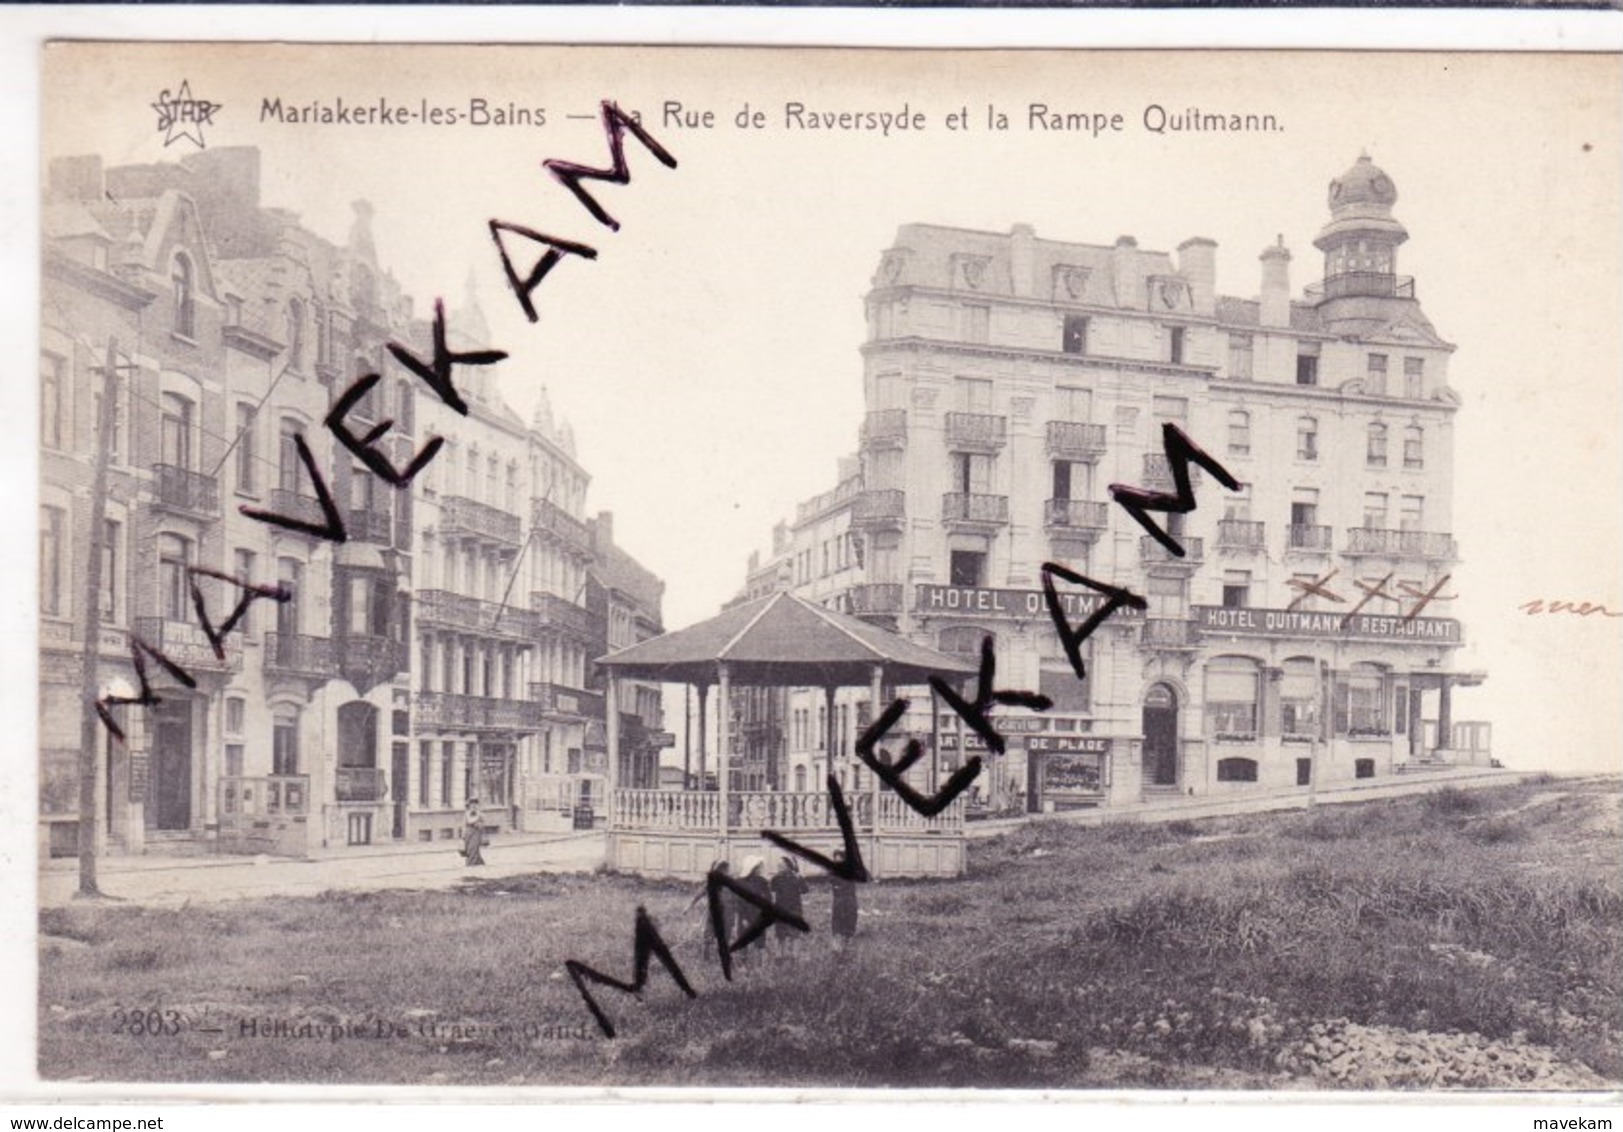 Cpa Mariakerke-les-bains " La Rue De Raversyde Et La Rampe Quitmann "  (Kiosque à Musique) - Oostende